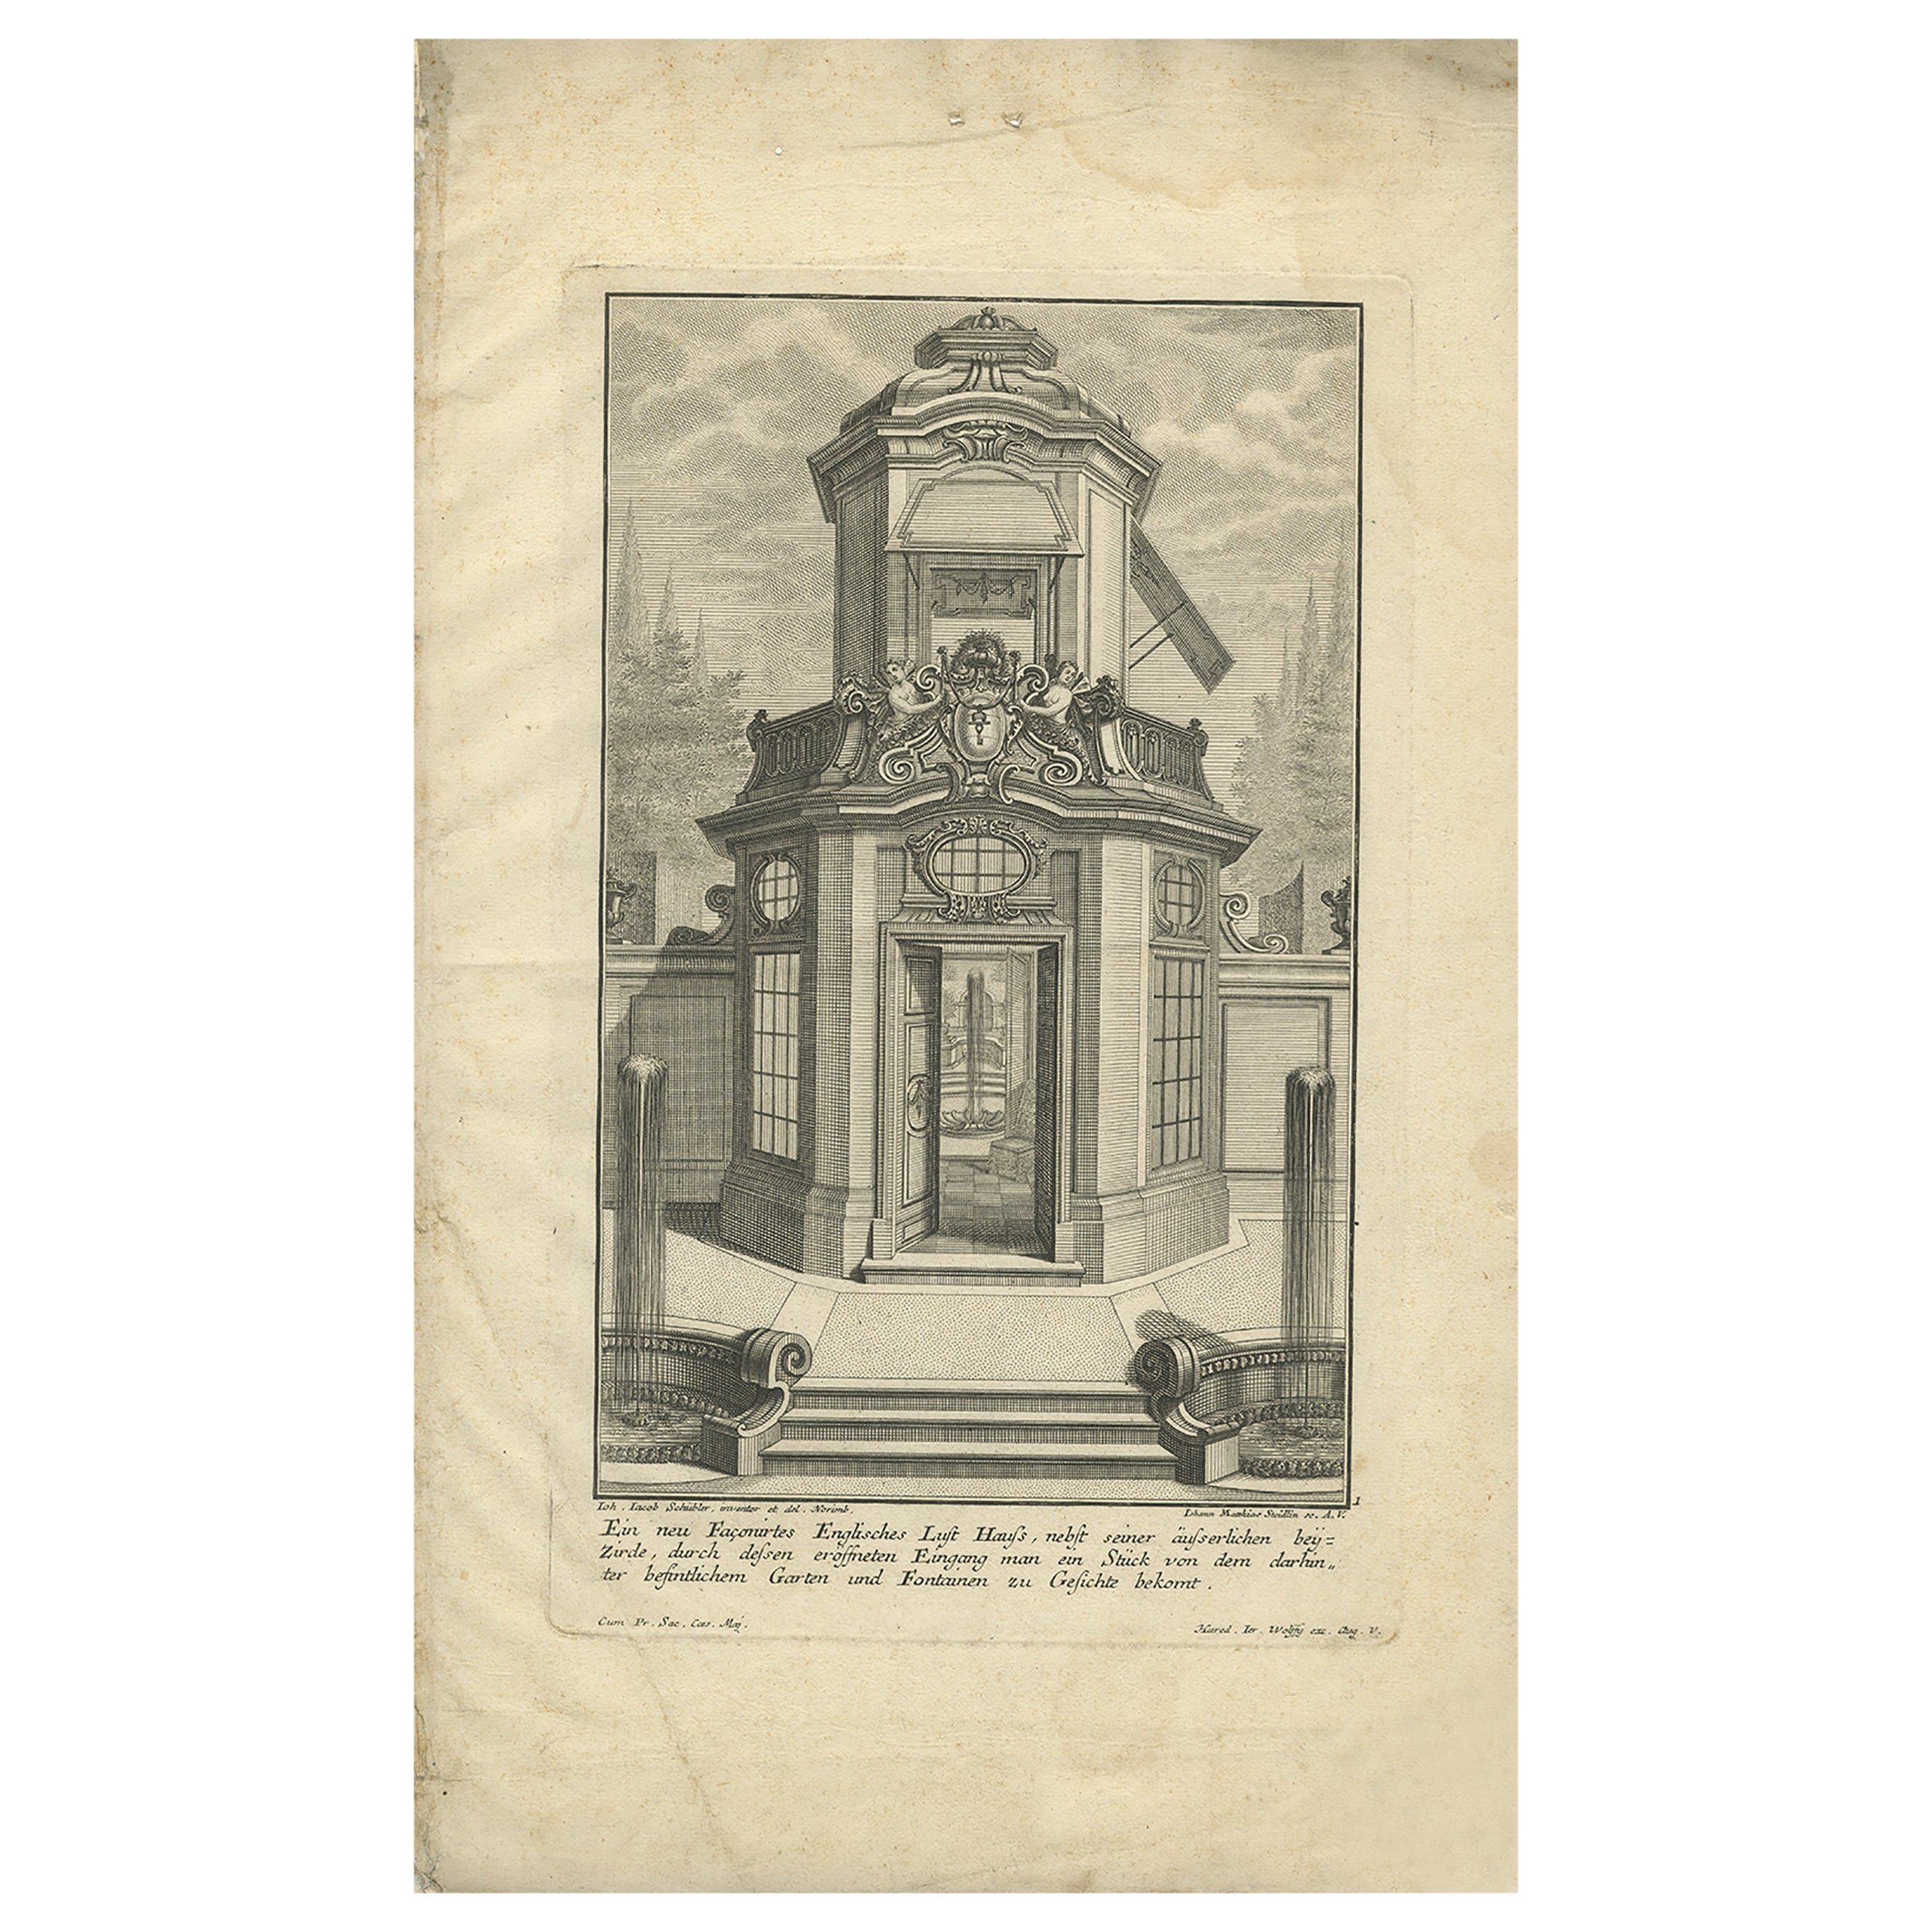 Pl. 1 Antiker Druck eines englischen Pavillons von Schübler, ca. 1724